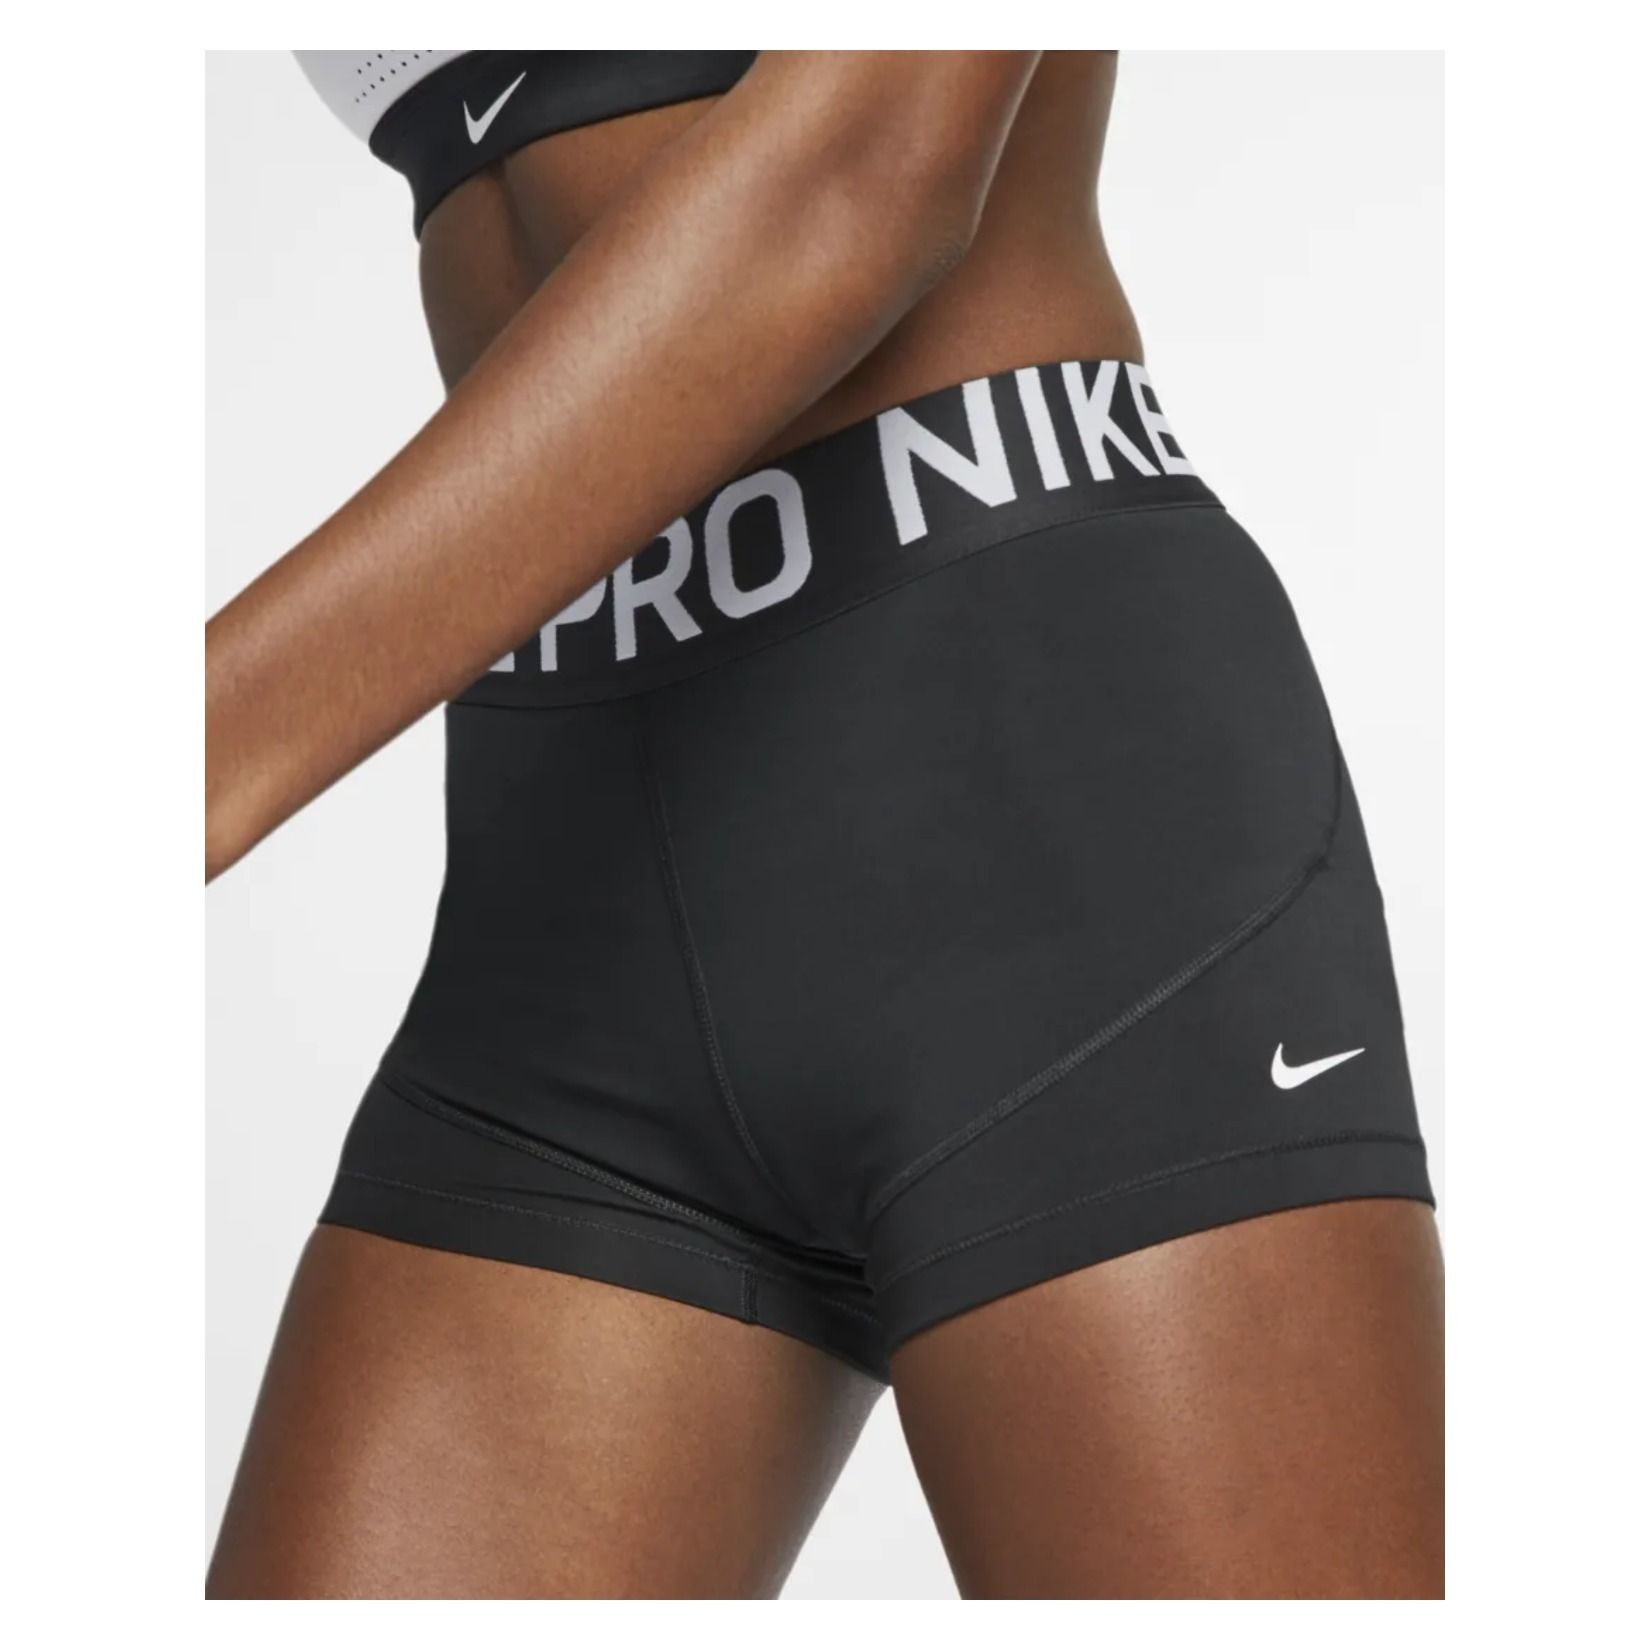 nike pro under shorts